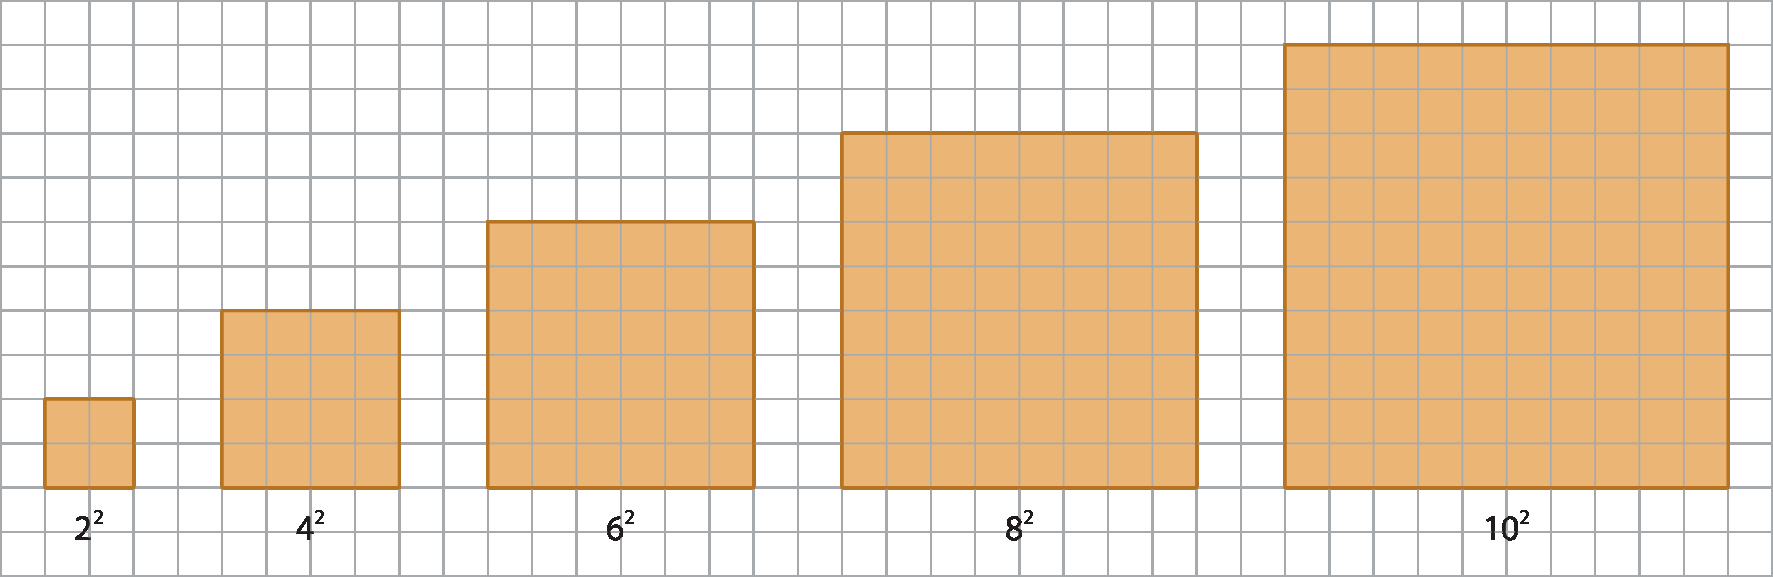 Ilustração. Malha quadriculada com cinco quadrados de cor laranja.   Primeiro quadrado: quadrado composto por 4 quadradinhos, de lados 2 por 2; abaixo, legenda: 2 elevado a 2.  Segundo quadrado: quadrado composto por 16 quadradinhos, de lados 4 por 4; abaixo, legenda: 4 elevado a 2.  Terceiro quadrado: quadrado composto por 36 quadradinhos, de lados 6 por 6; abaixo, legenda: 6 elevado a 2.  Quarto quadrado: quadrado composto por 64 quadradinhos, de lados 8 por 8; abaixo, legenda: 8 elevado a 2.  Quinto quadrado: quadrado composto por 100 quadradinhos, de lados 10 por 10; abaixo, legenda: 10 elevado a 2.